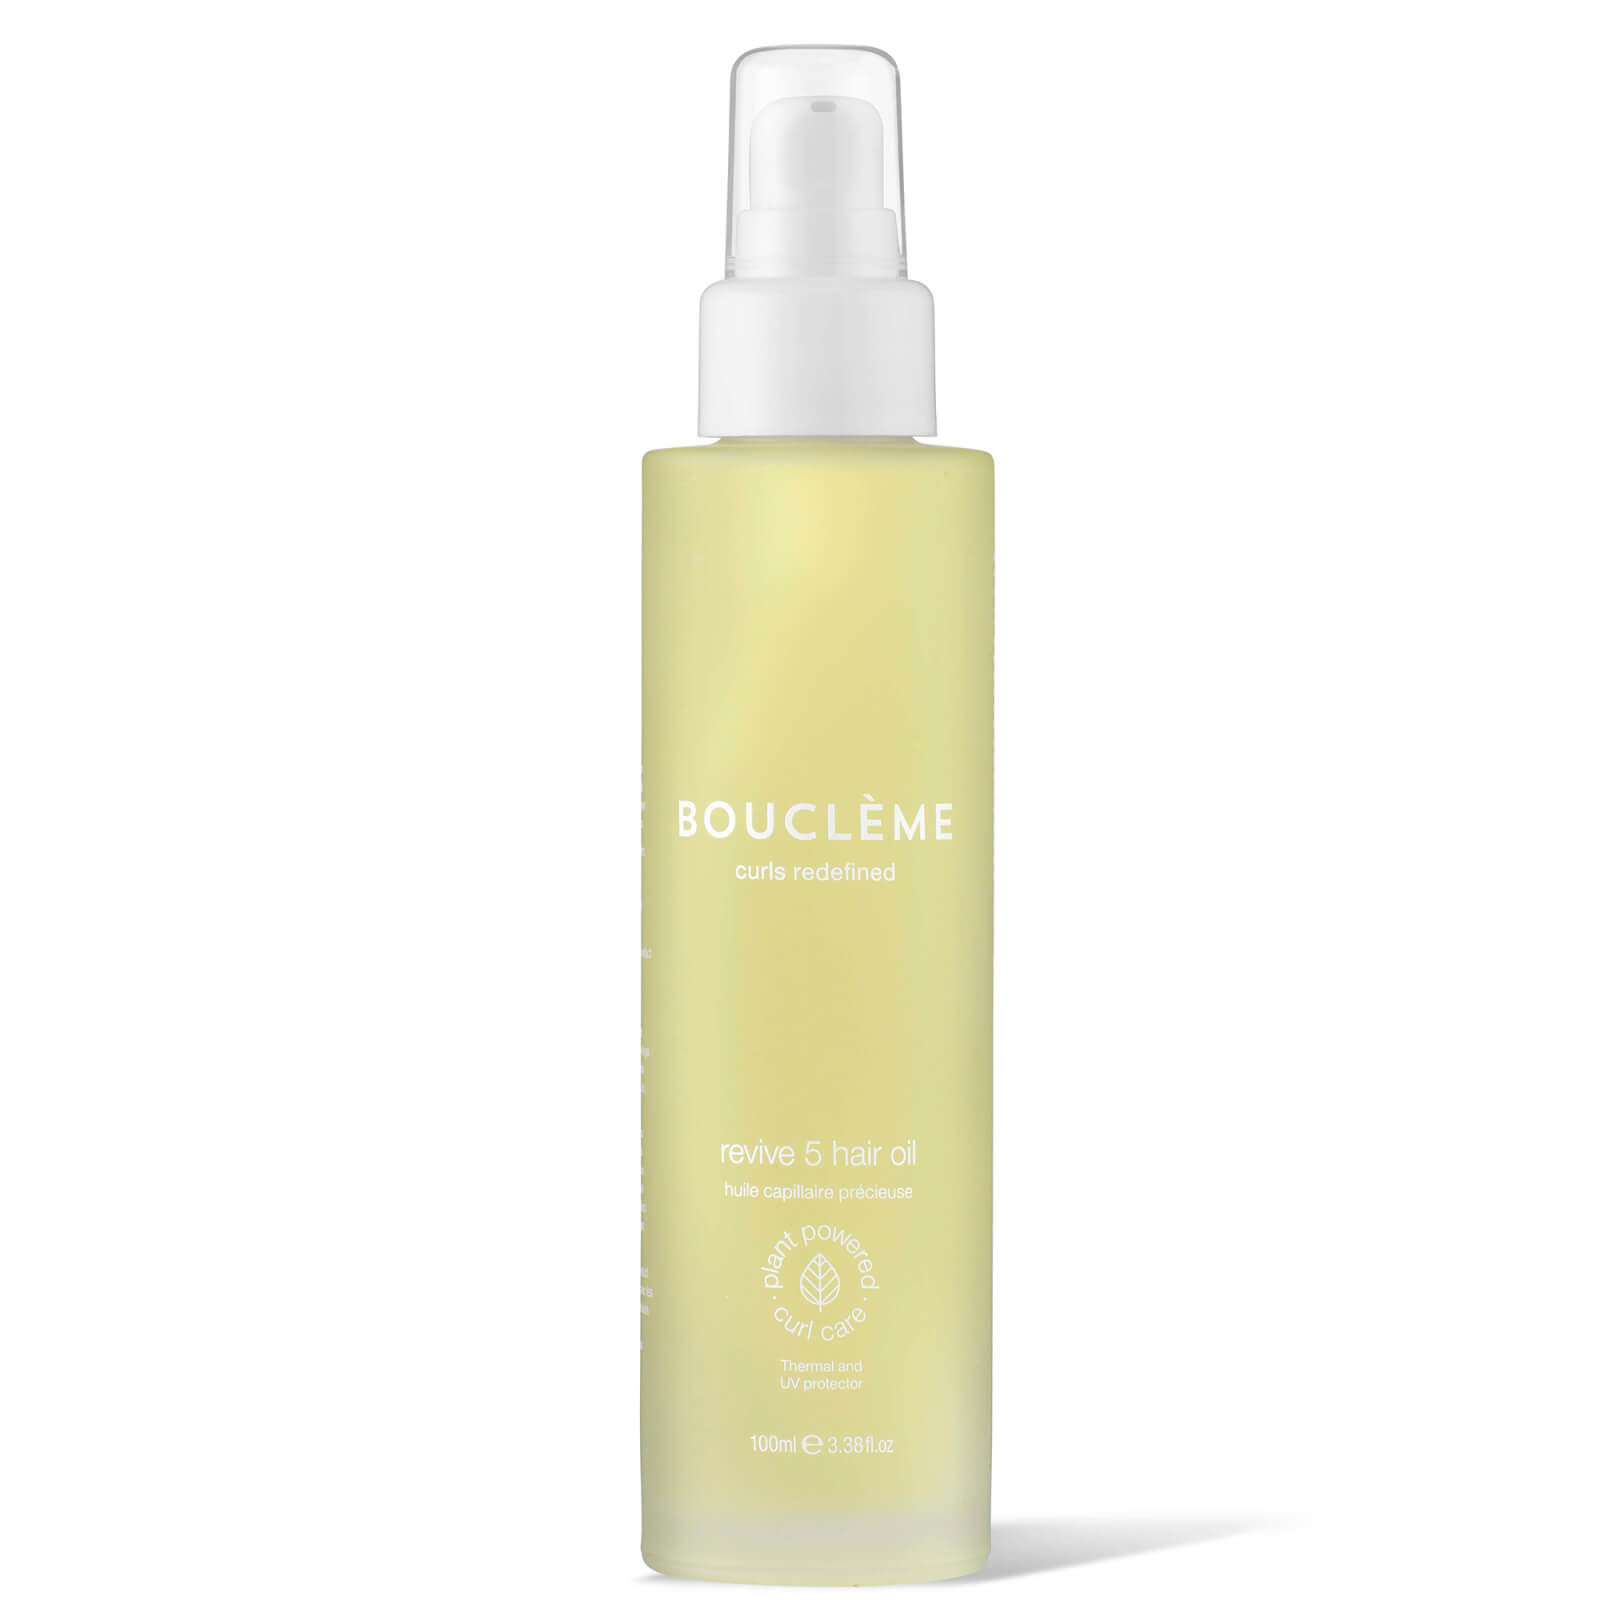 Image of Bouclème Revive 5 Hair Oil